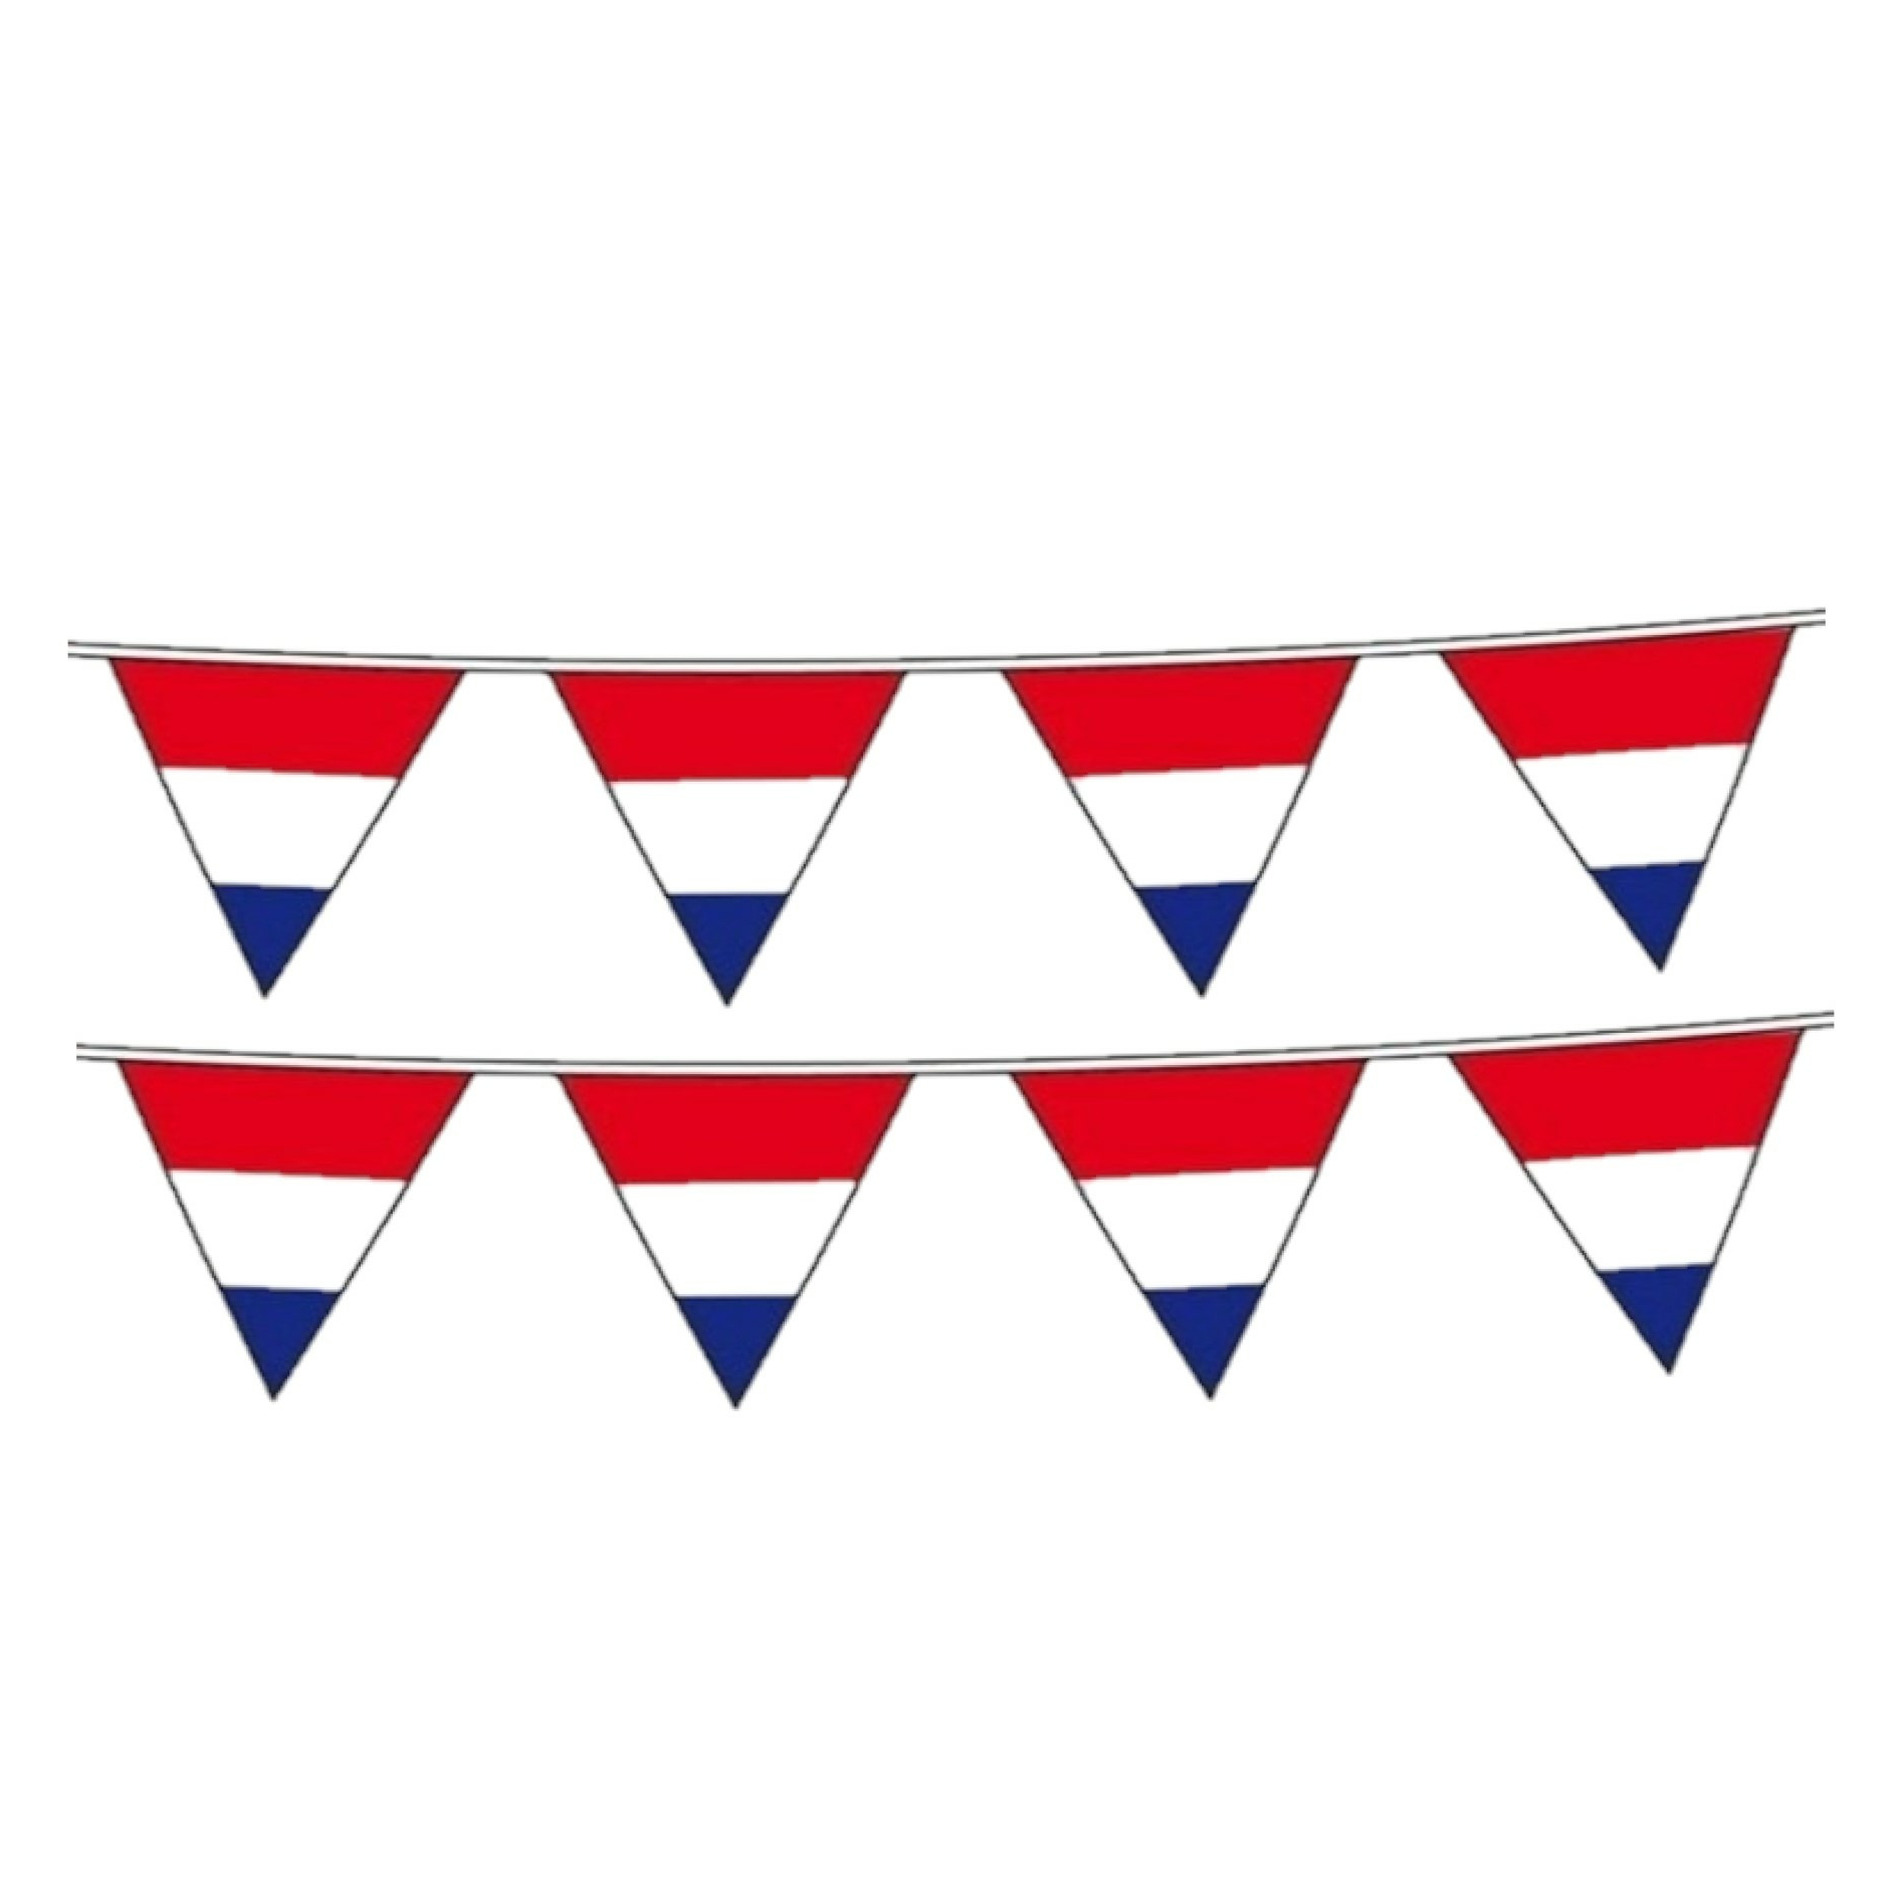 2x stuks vlaggetjes vlag kleuren rood-wit-blauw Holland plastic 10 meter